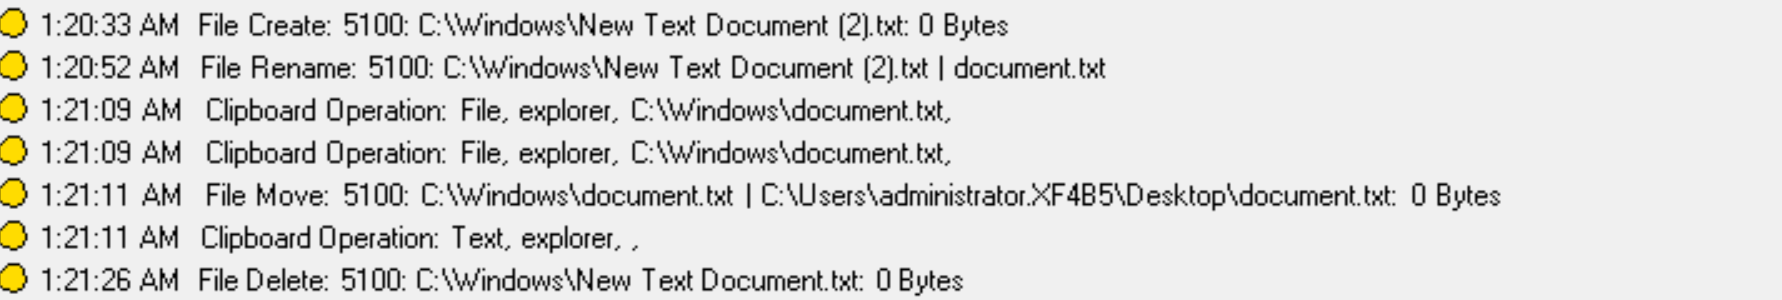 Operaciones de archivos